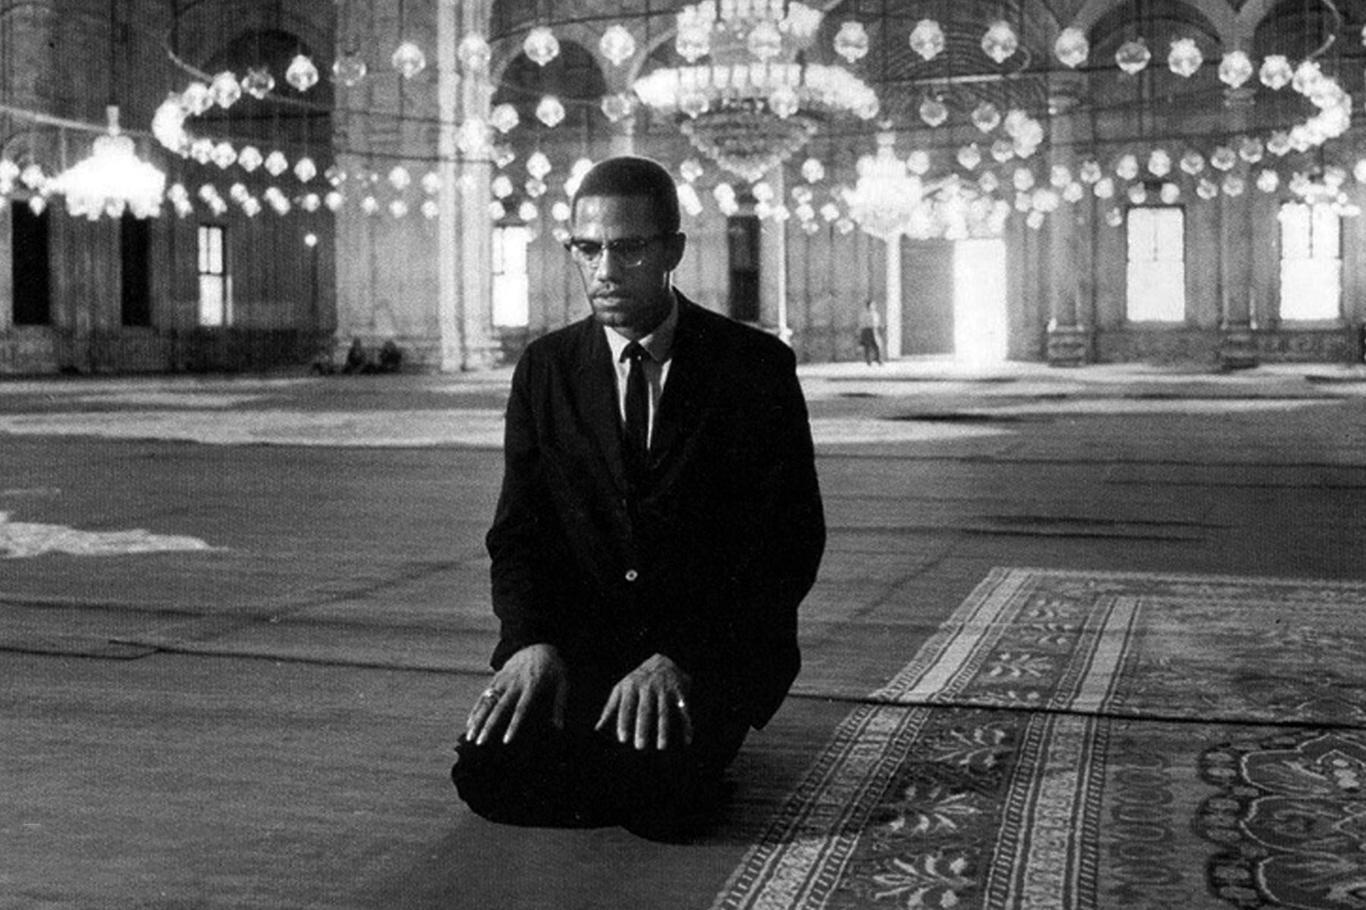 Irkçılıktan muvahhidliğe dönüşümün simgesi: Şehid Malcolm X